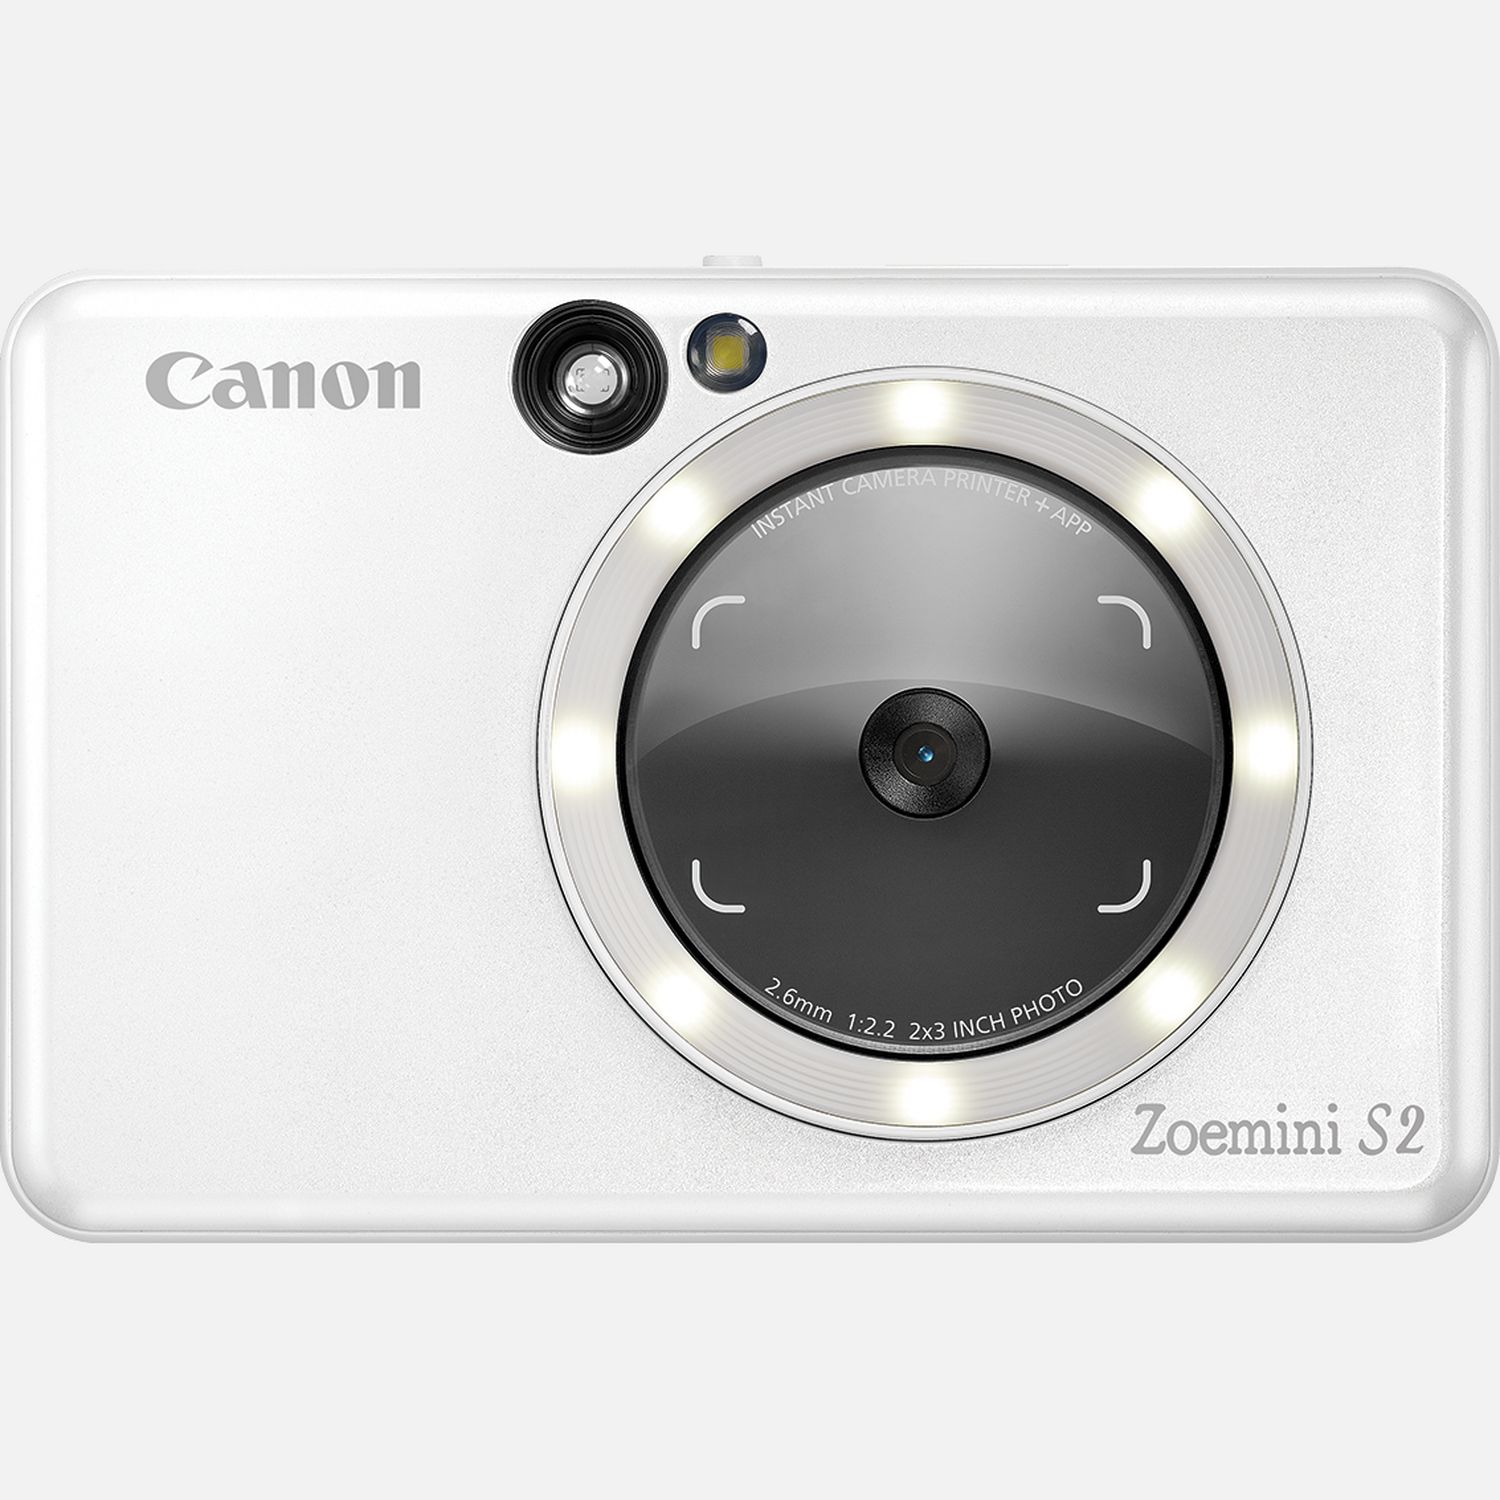 Image of Fotocamera istantanea a colori Canon Zoemini S2, bianco perla